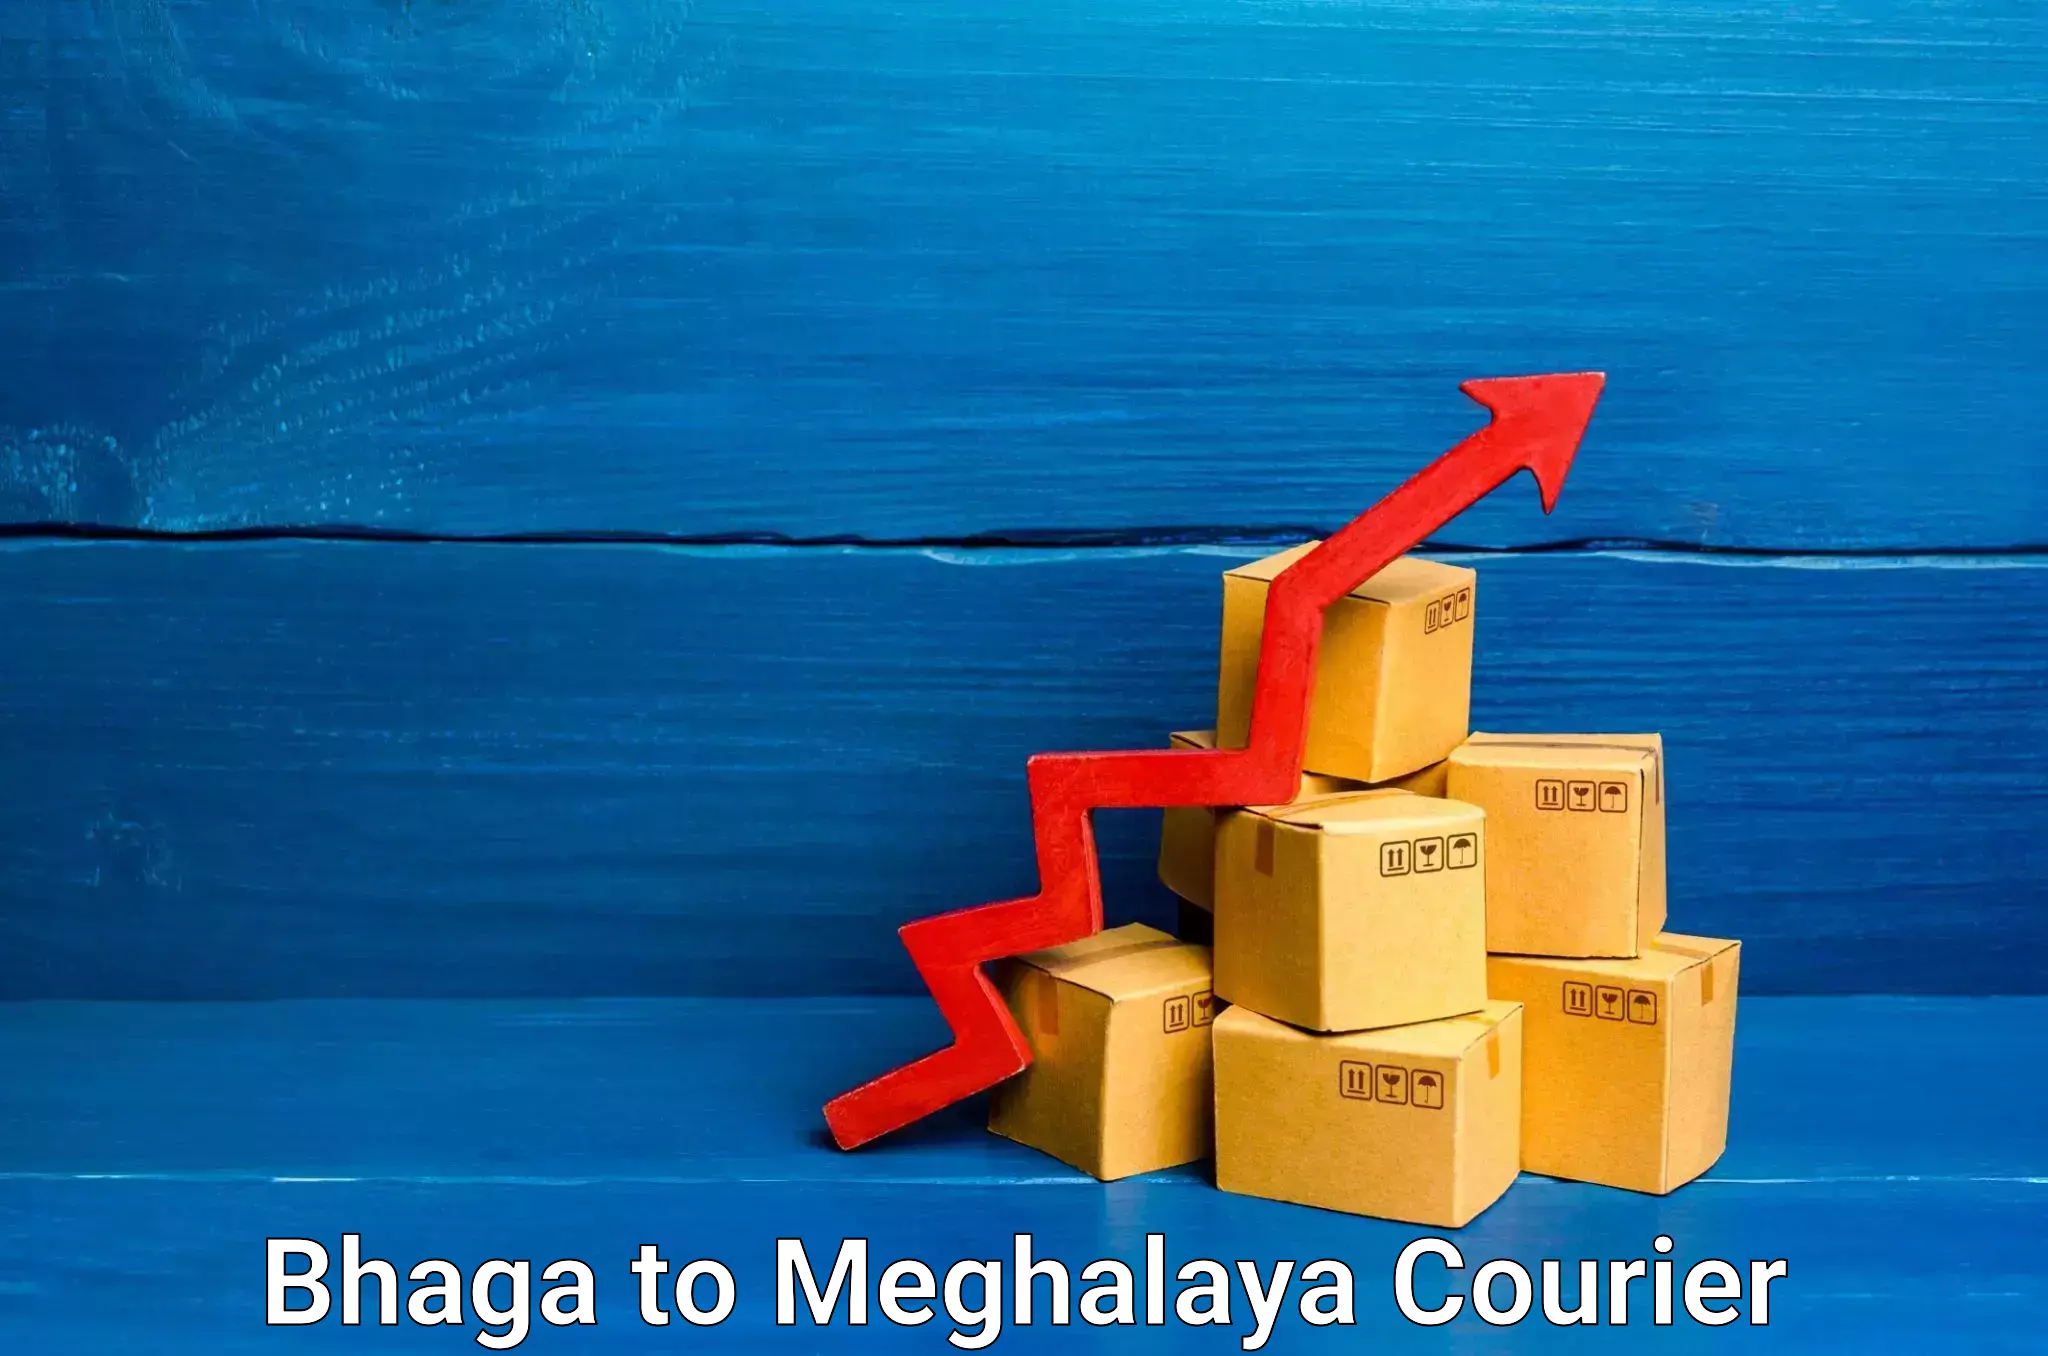 Expedited shipping methods Bhaga to Meghalaya